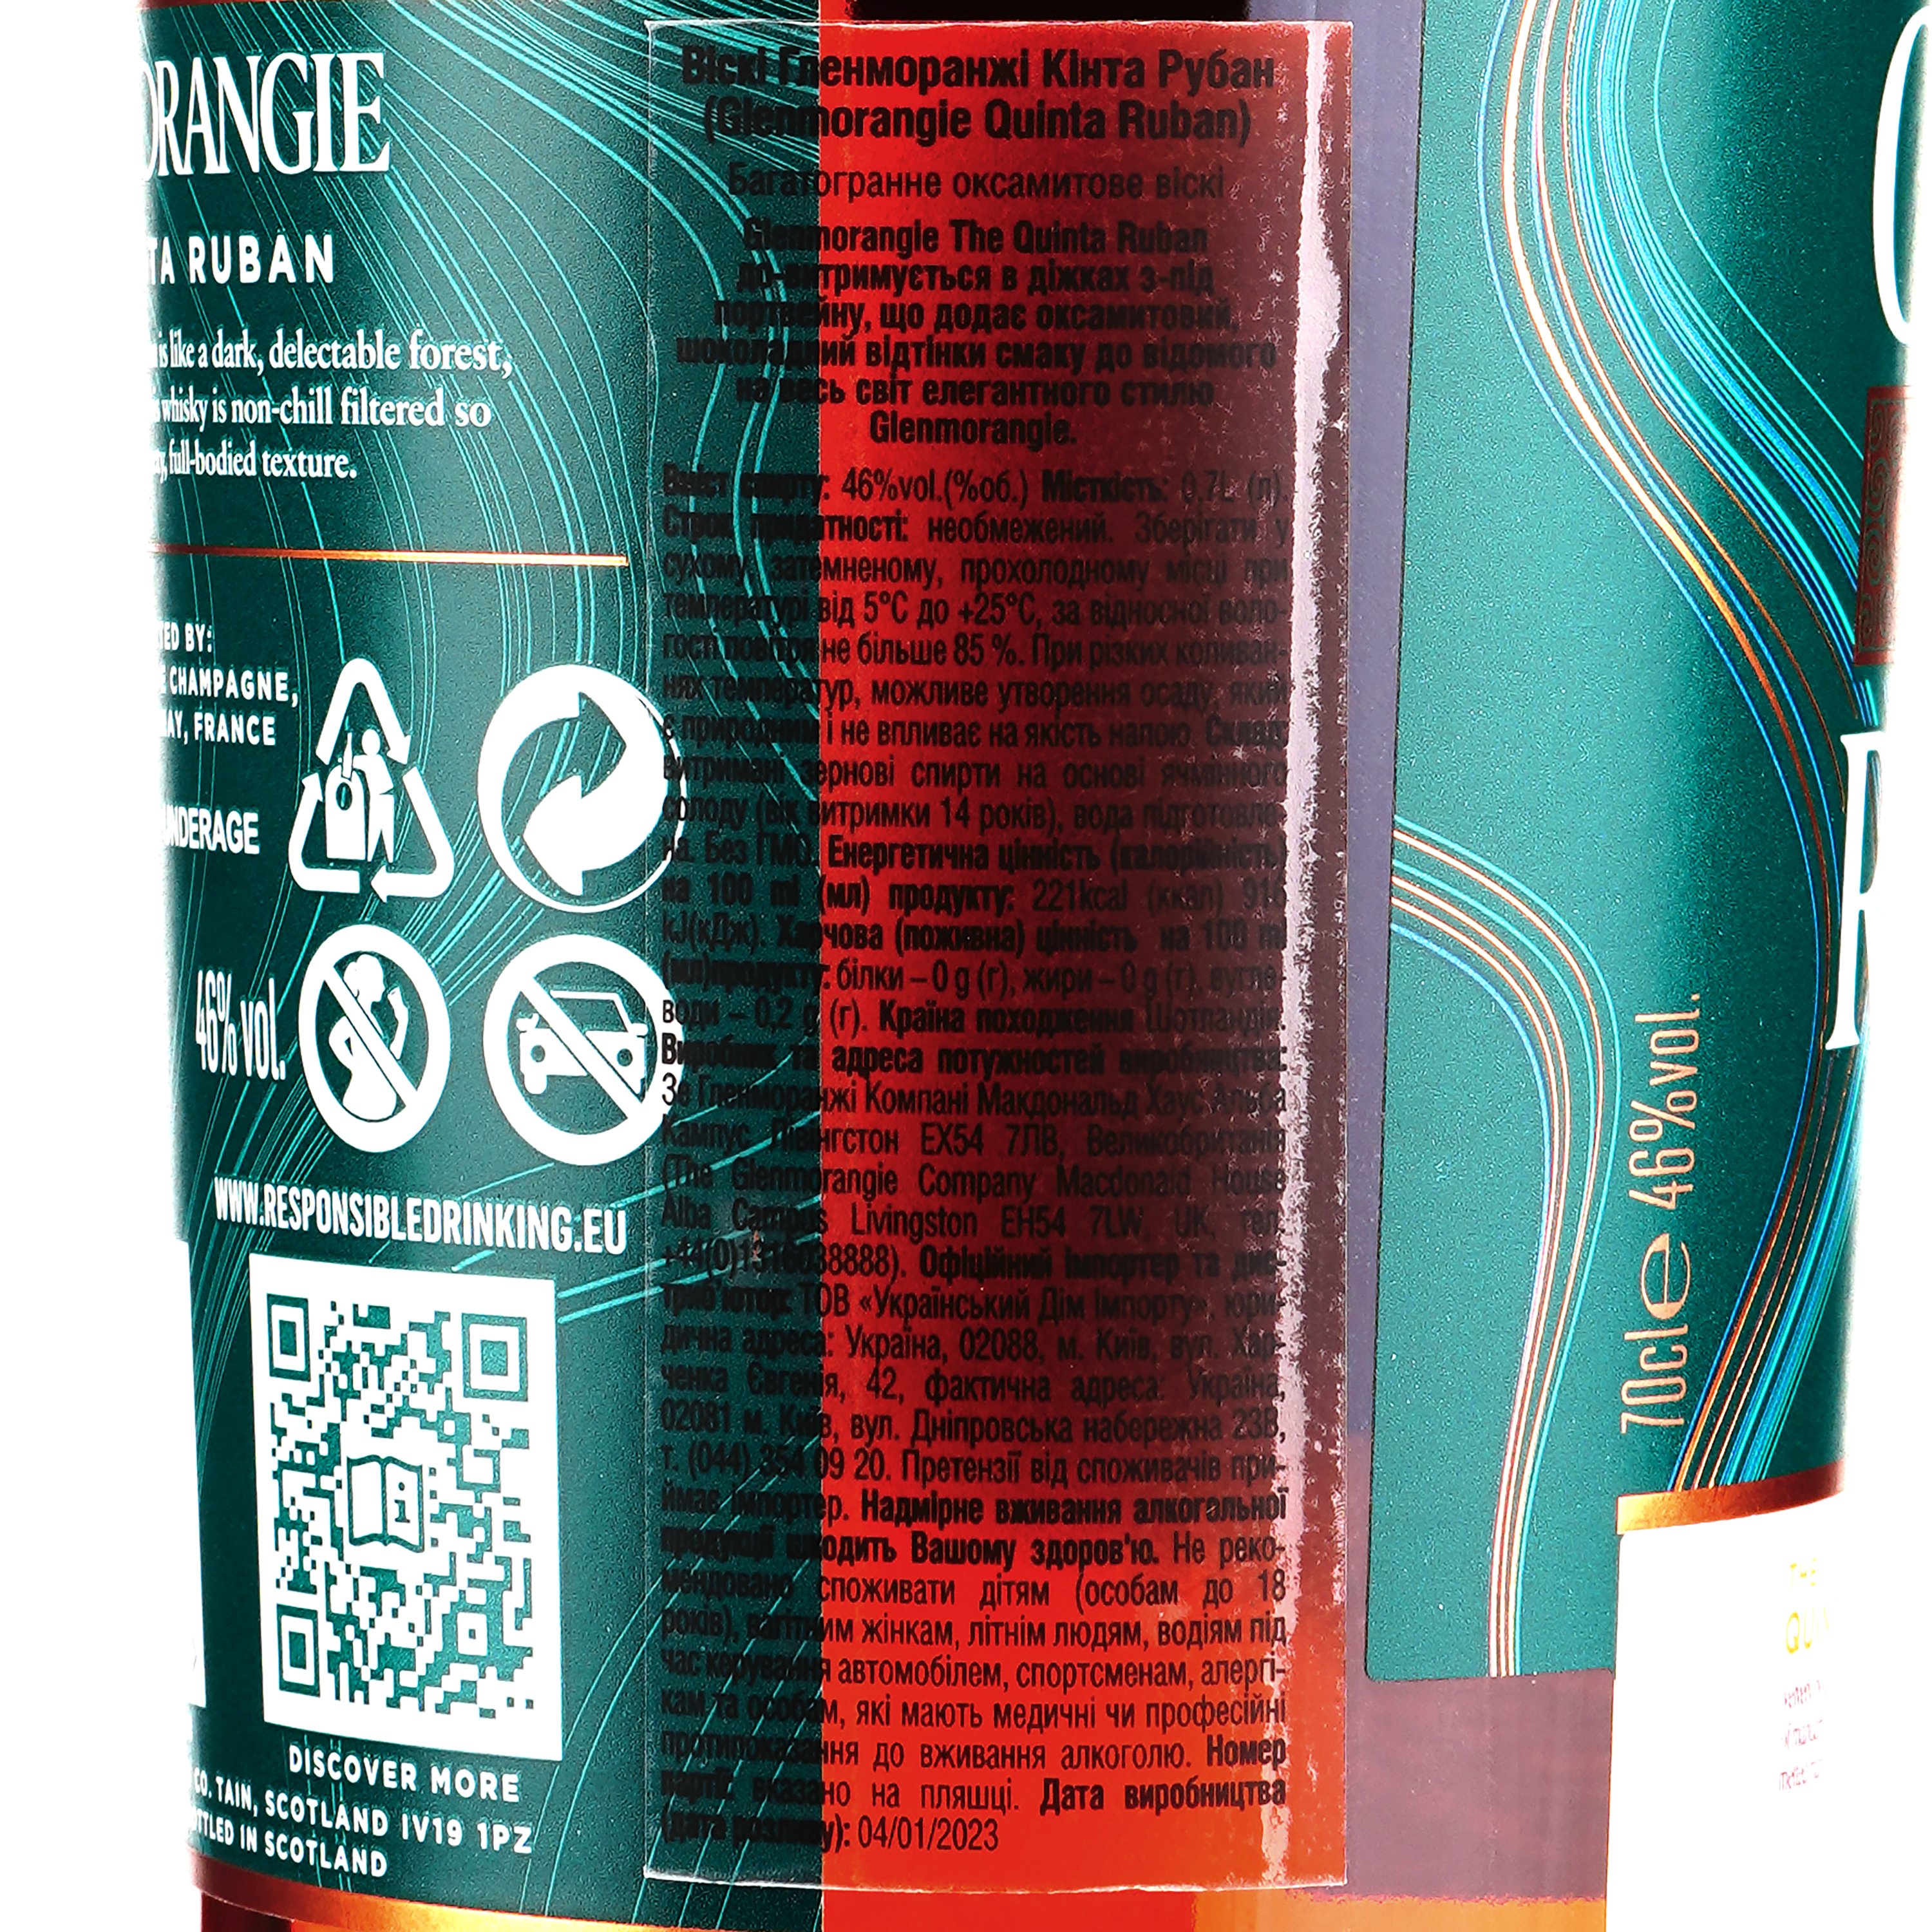 Виски Glenmorangie Quinta Ruban, 14 лет выдержки, в подарочной упаковке, 46%, 0,7 л (374924) - фото 3